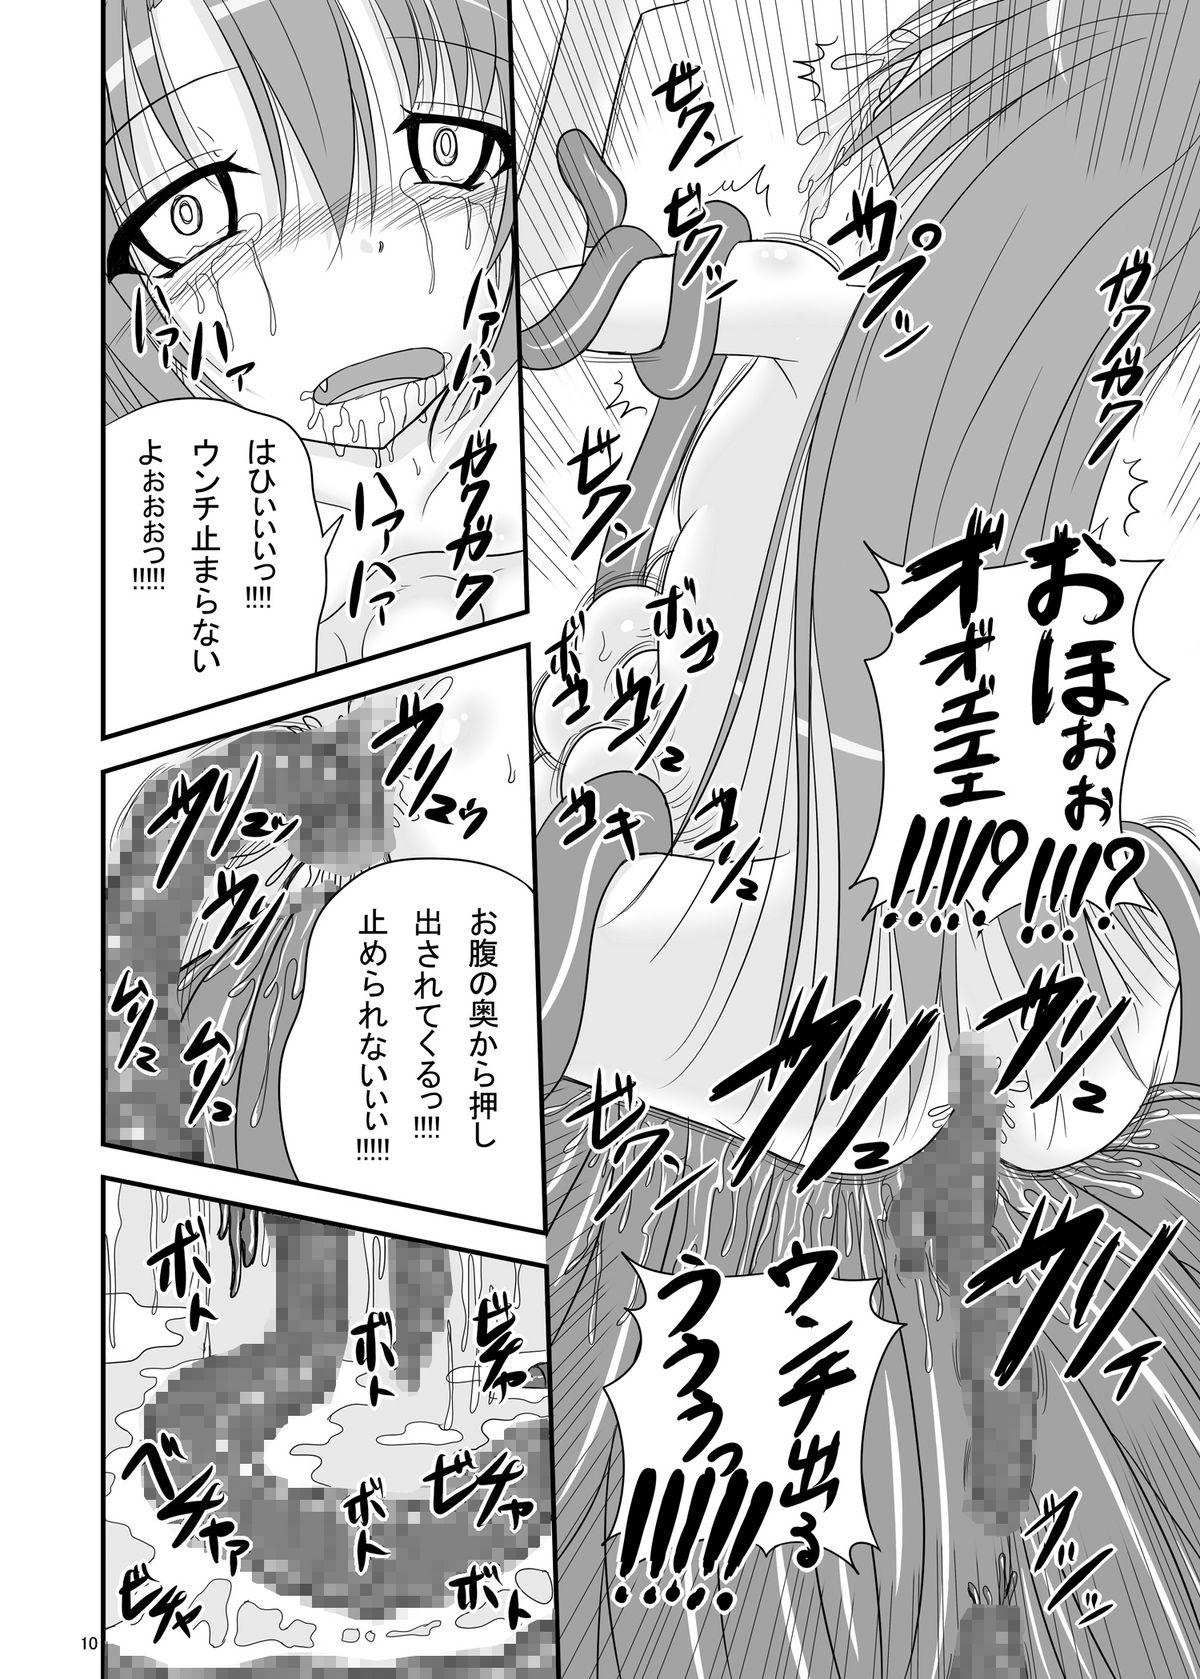 Uncensored Itsuka Zenshin Funsha no Kuso Usagi - Itsuka tenma no kuro usagi Jacking - Page 10